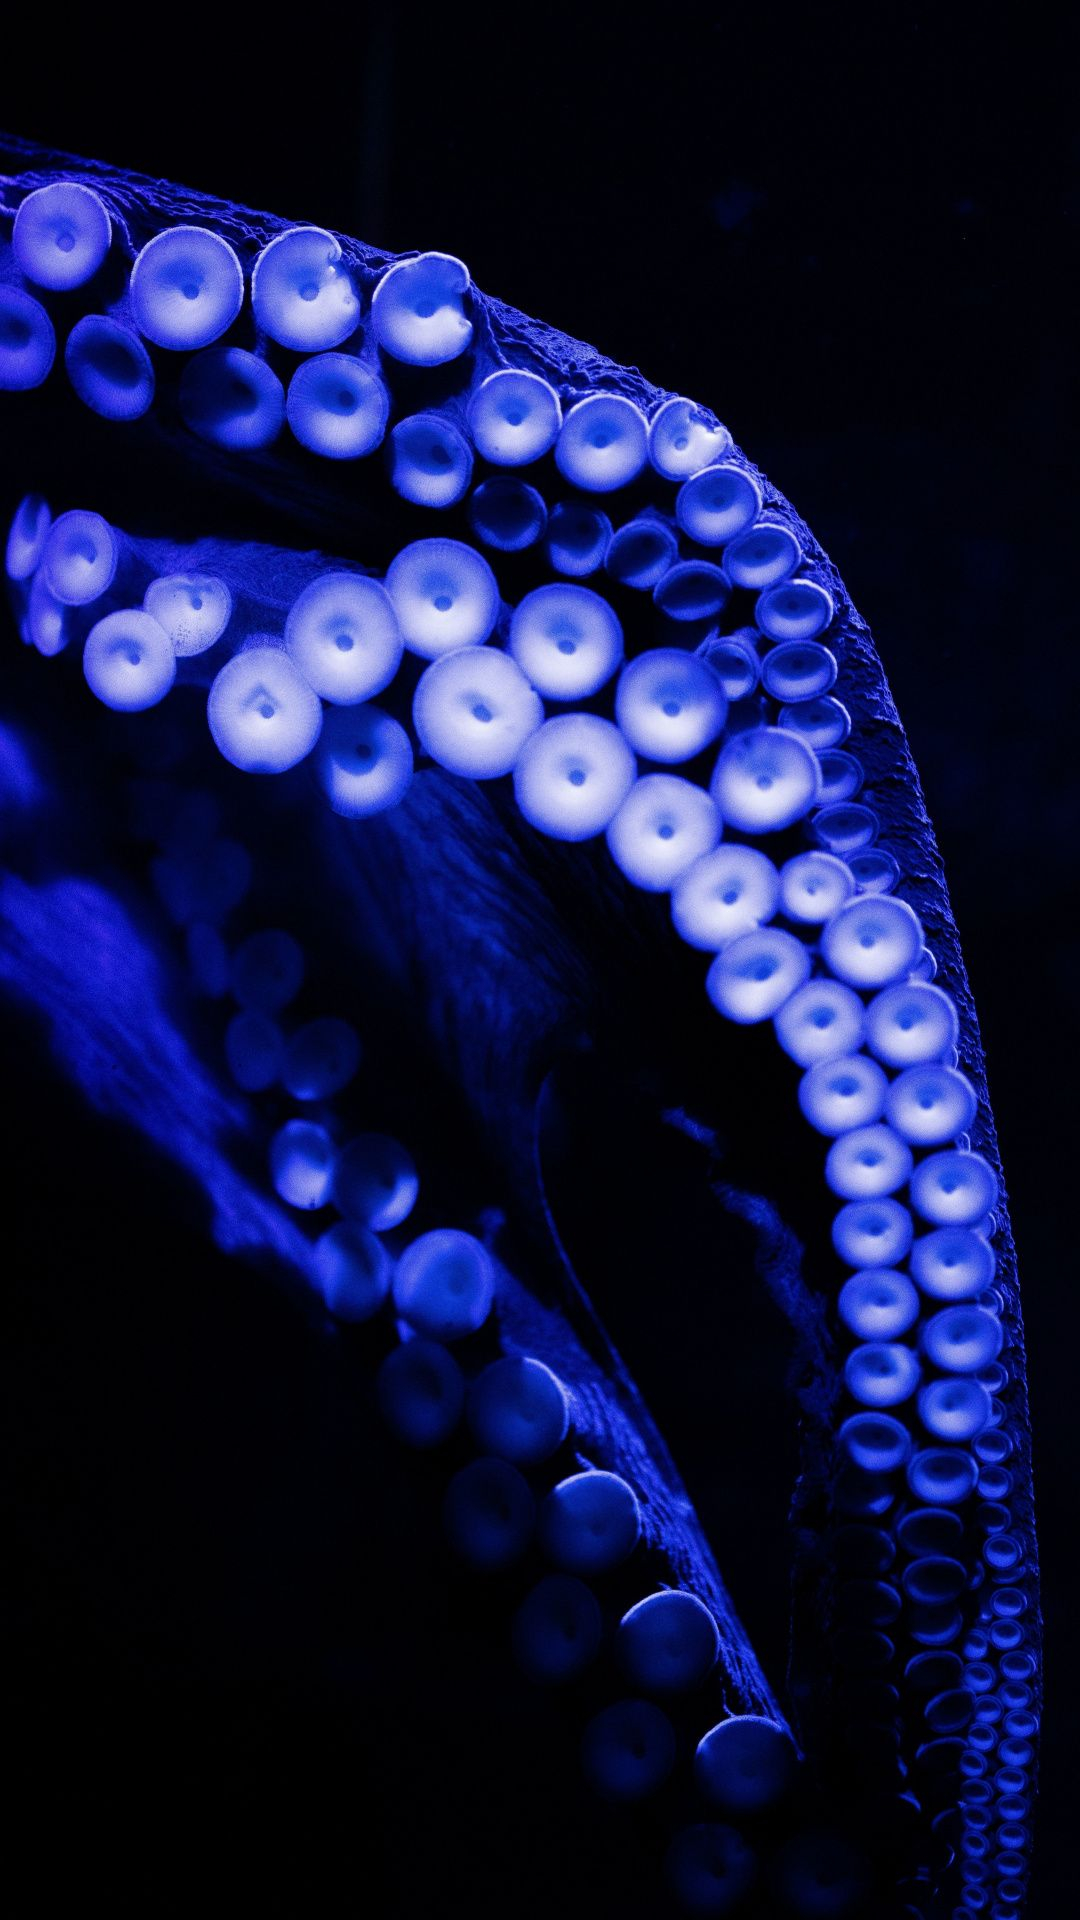 1080x1920 Octopus legs, aquatic life, close up wallpaper | Animal wallpaper, Octopus wallpaper, Octopus legs